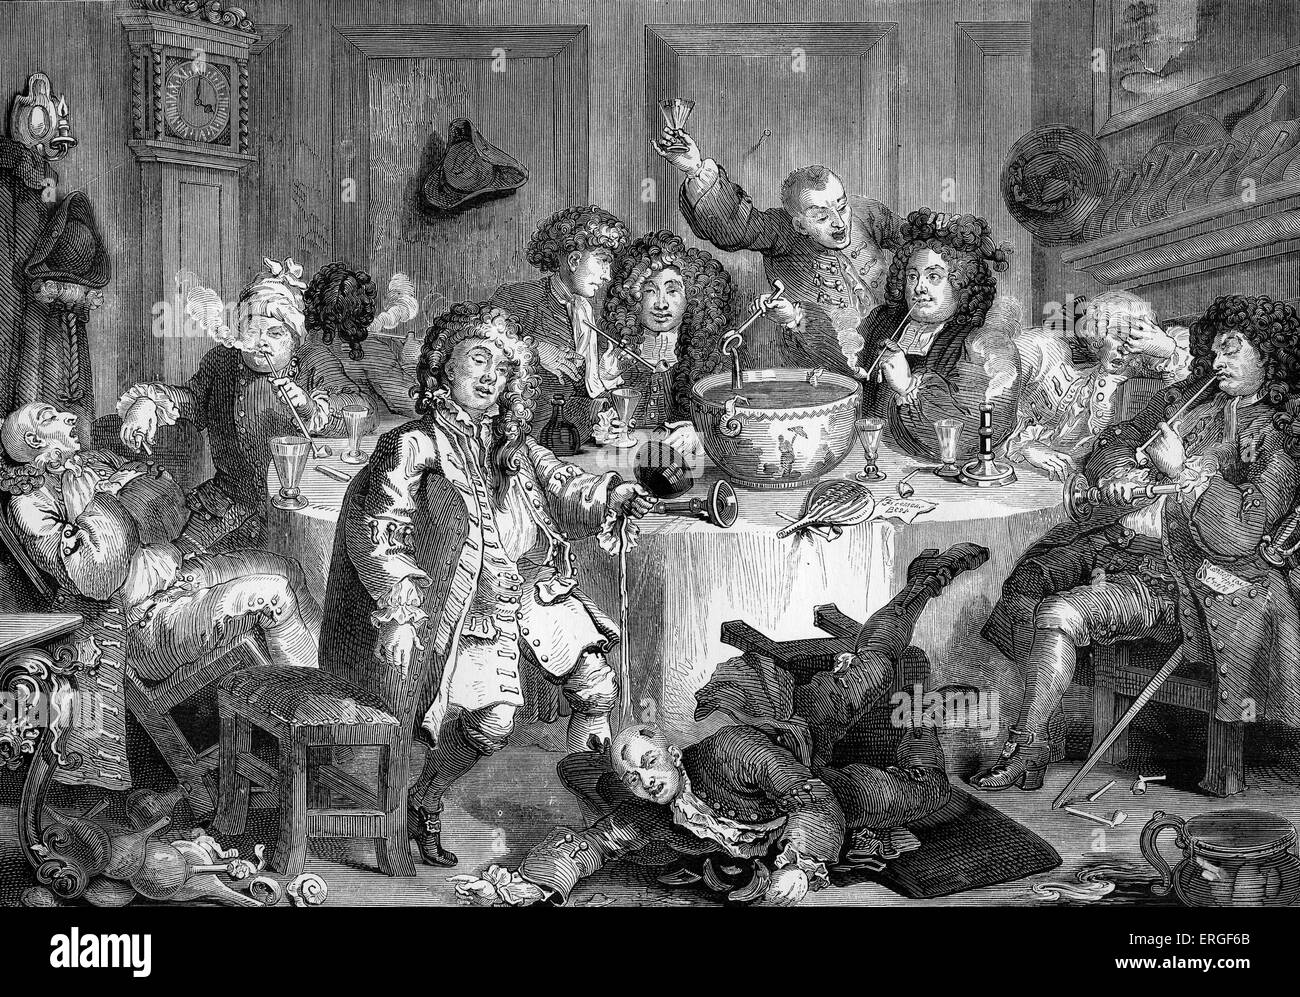 История пьяницы. Уильям Хогарт карьера Мота. Пир Петра 1. Трактир Англия 18 век. Пьянство в Великобритании в 18 веке.